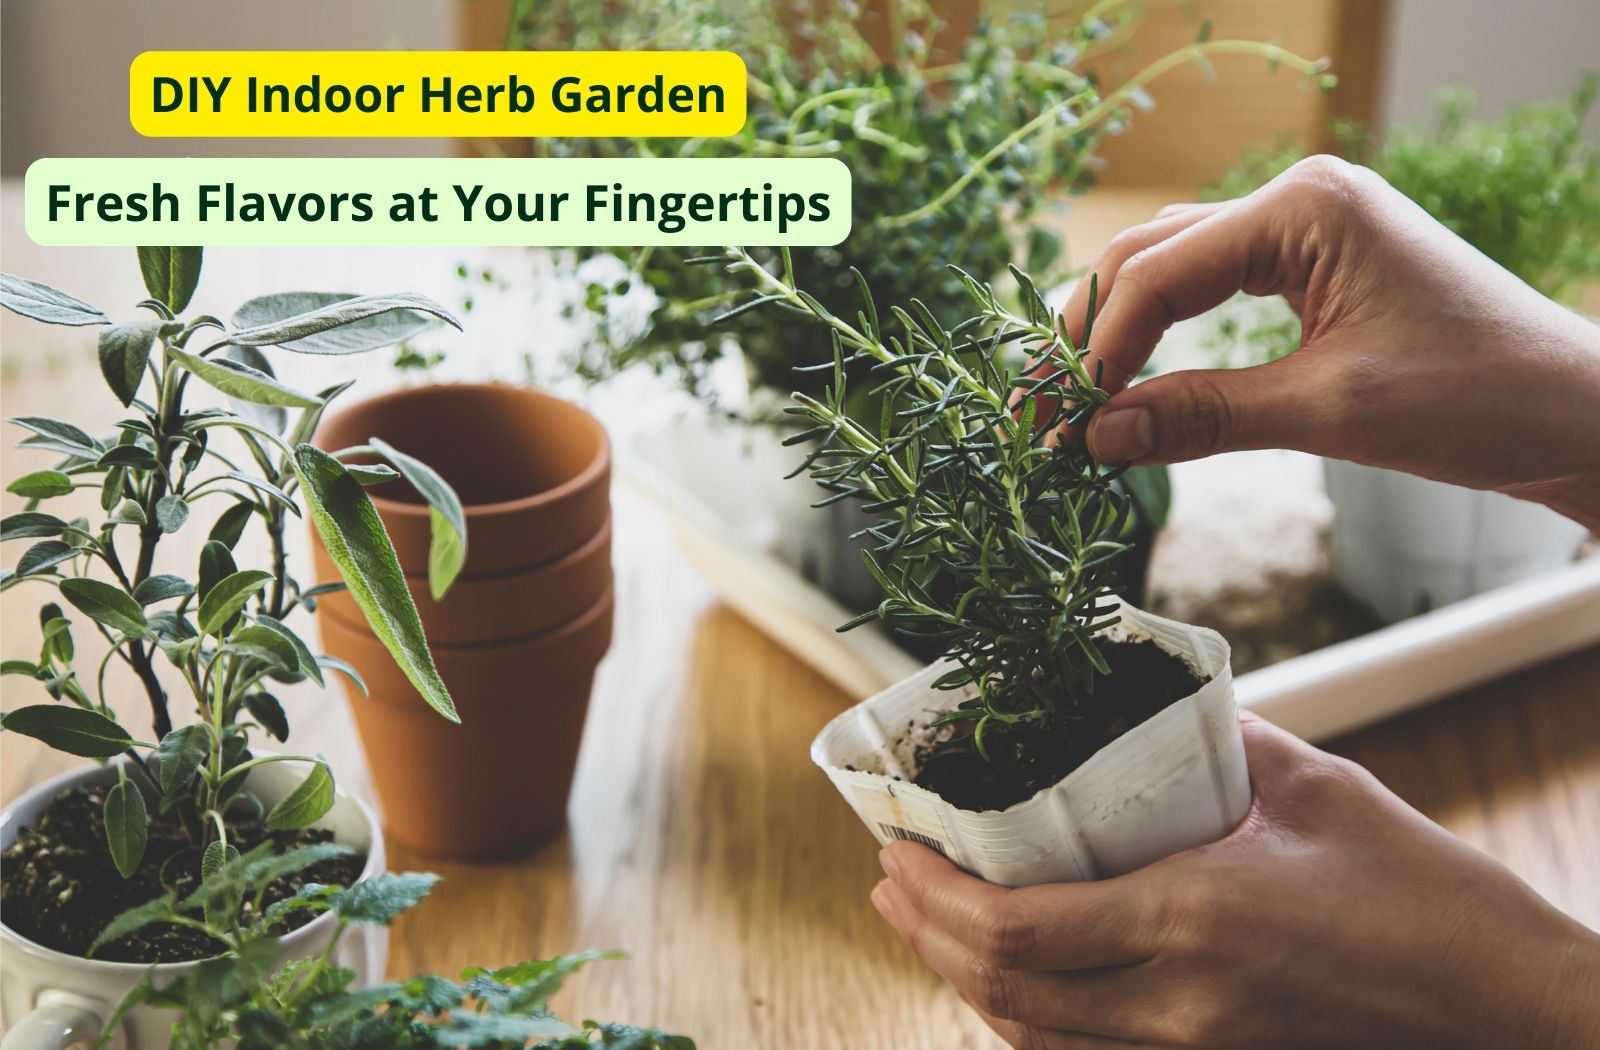 DIY Indoor Herb Garden: Fresh Flavors at Your Fingertips